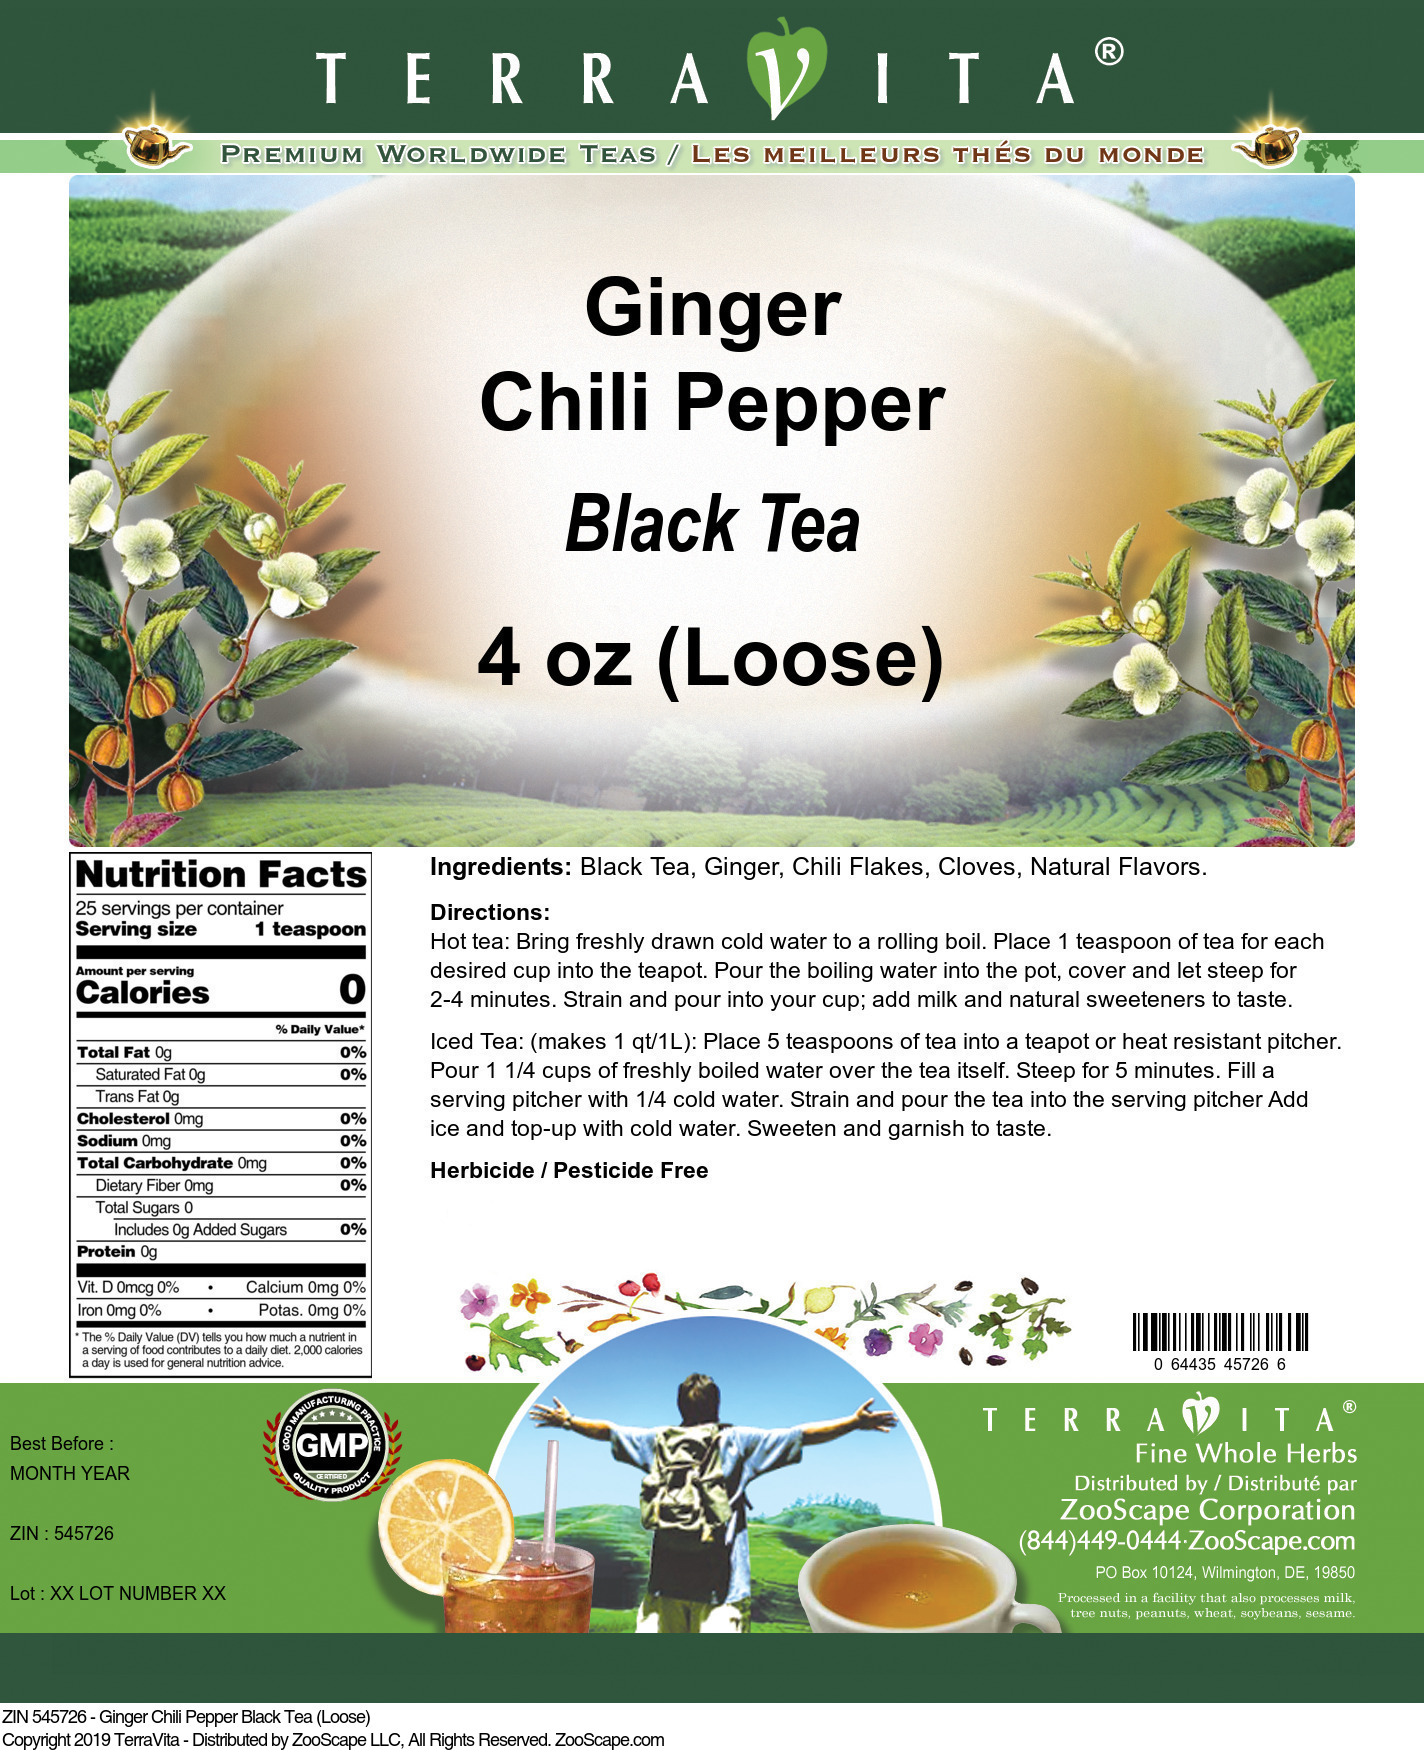 Ginger Chili Pepper Black Tea (Loose) - Label